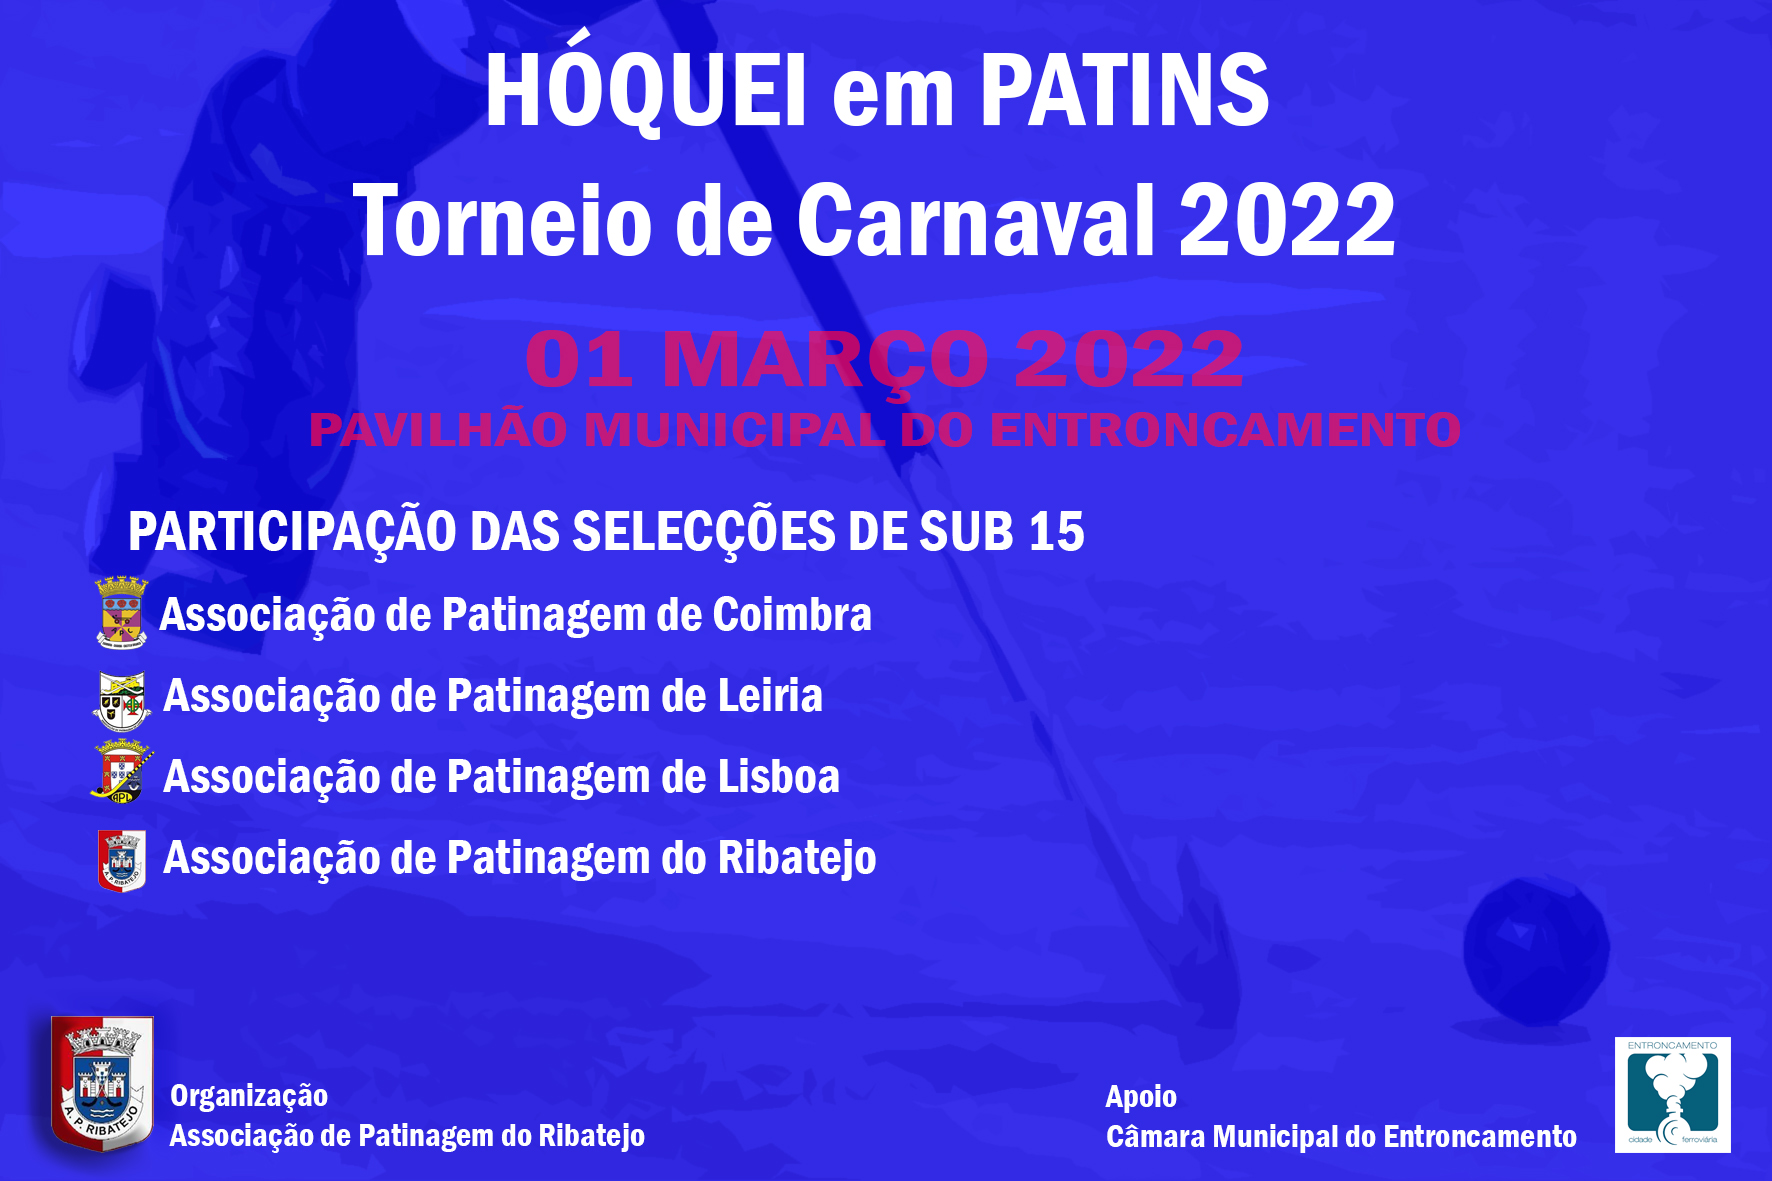 Torneio de Carnaval de Hóquei em Patins Masculino Sub-15